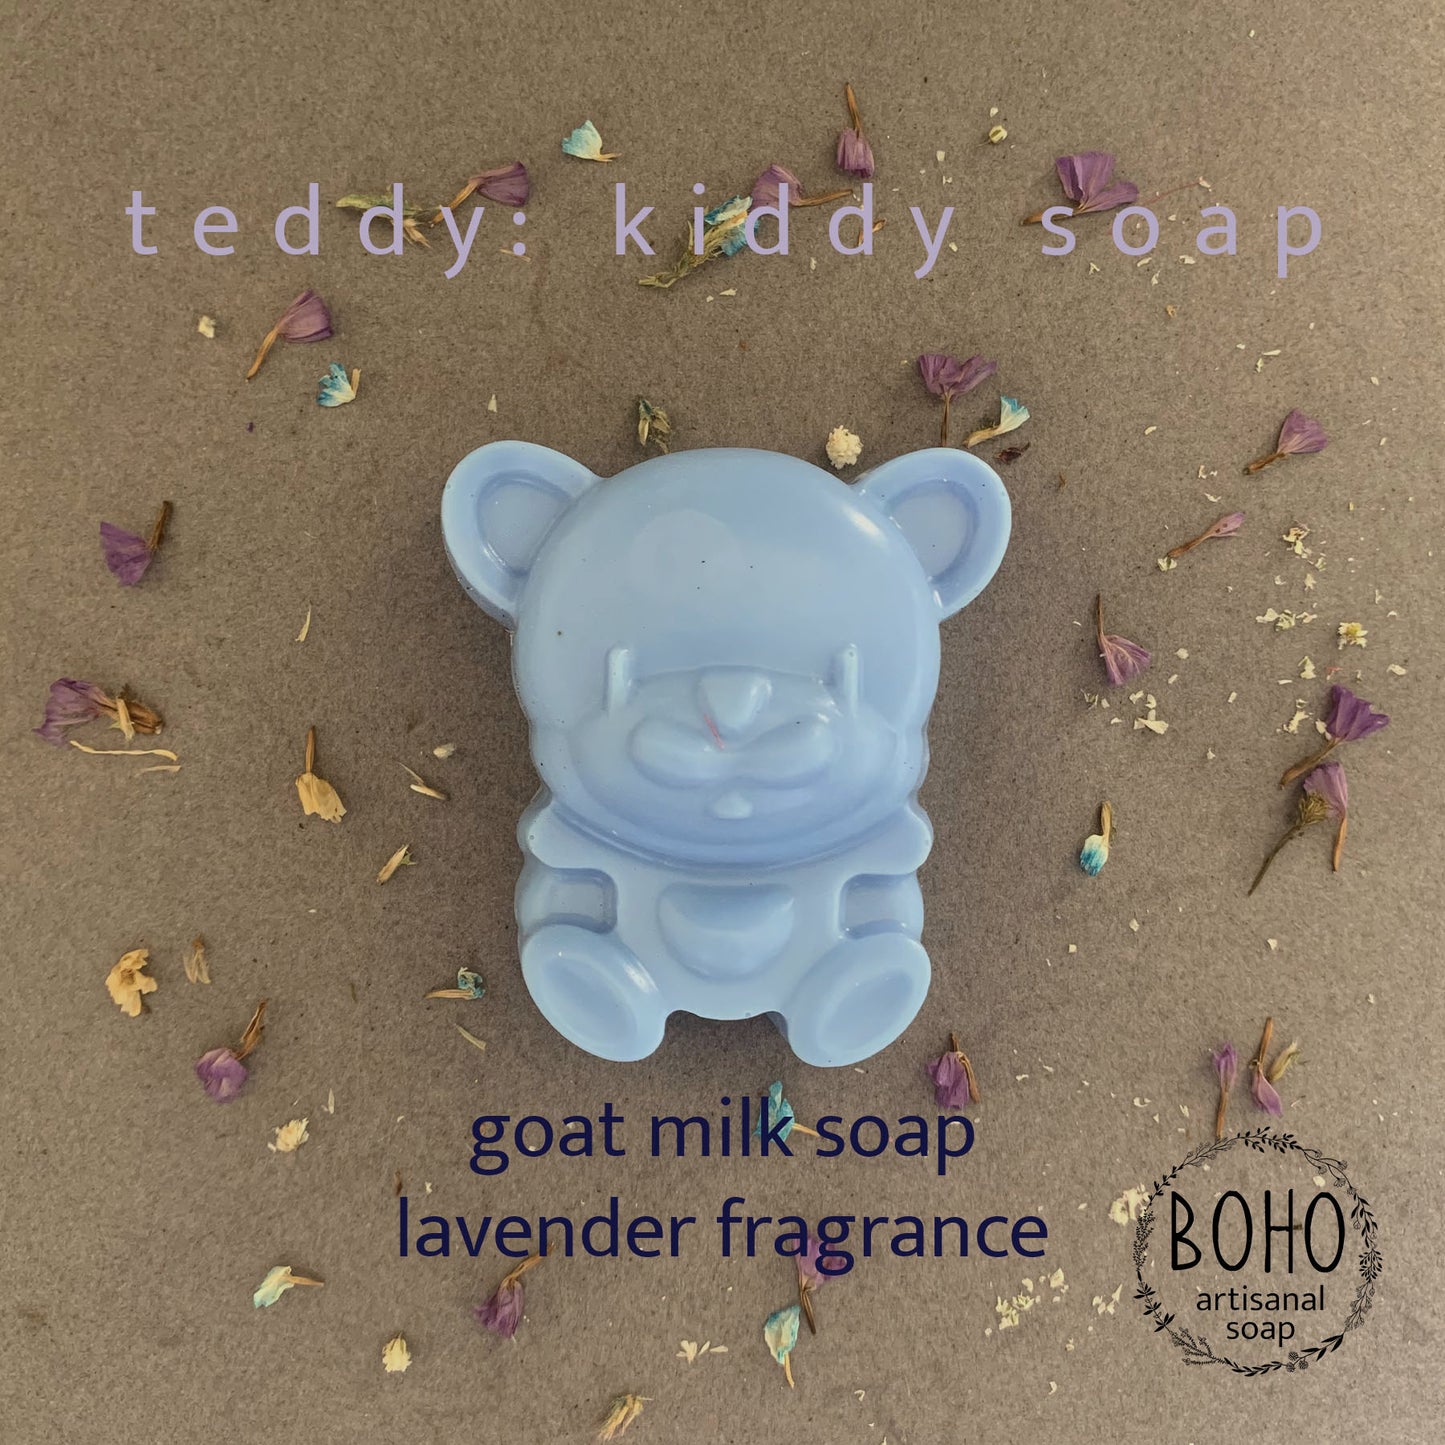 Teddy Bear Goat Milk - Handmade Boho Artisanal Soap